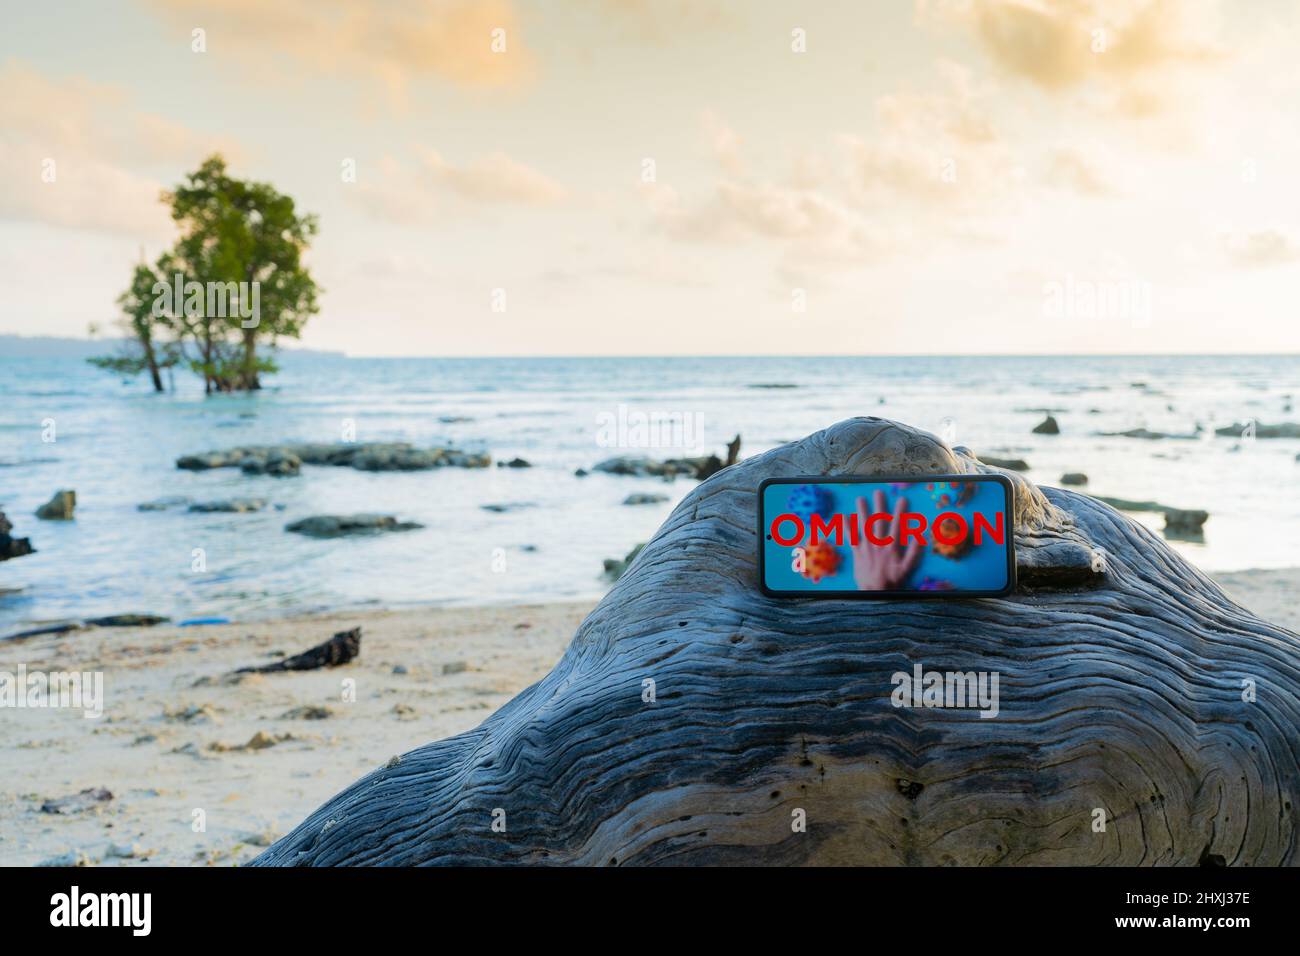 Mobiltelefon auf einem Felsen an einem einsamen Strand platziert, der aufgrund der COVID-Variantenwelle von omicron weltweit Urlaubsreisen und mehr annulliert wurde Stockfoto